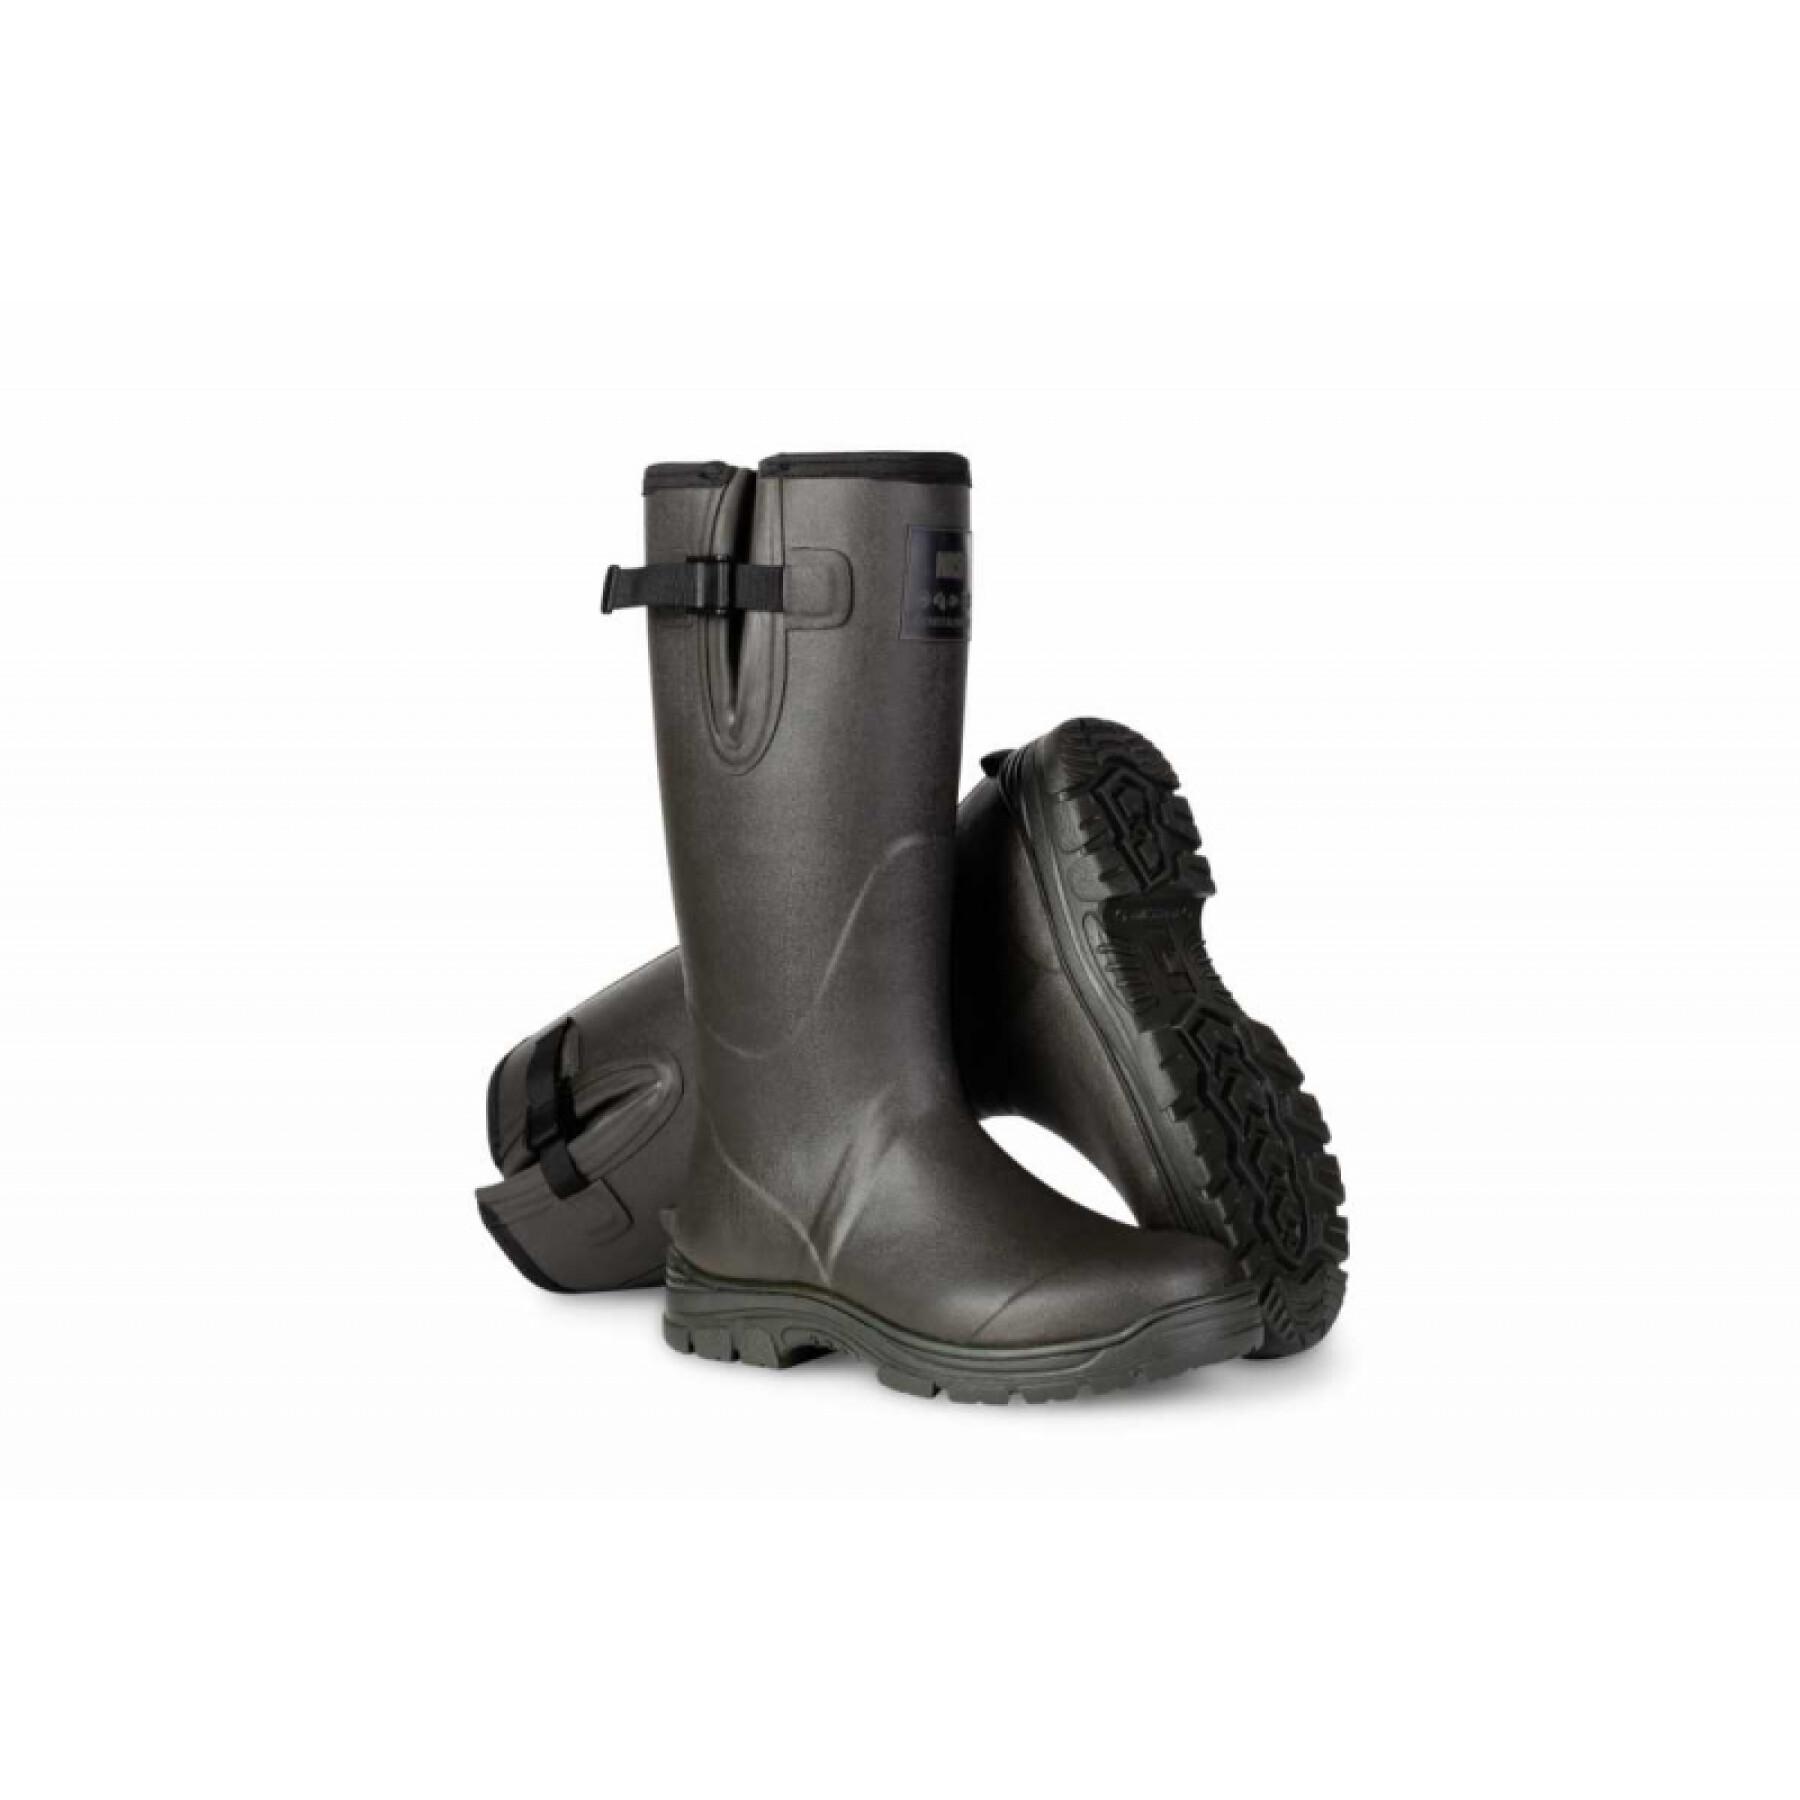 All-terrain rubber boots ZT